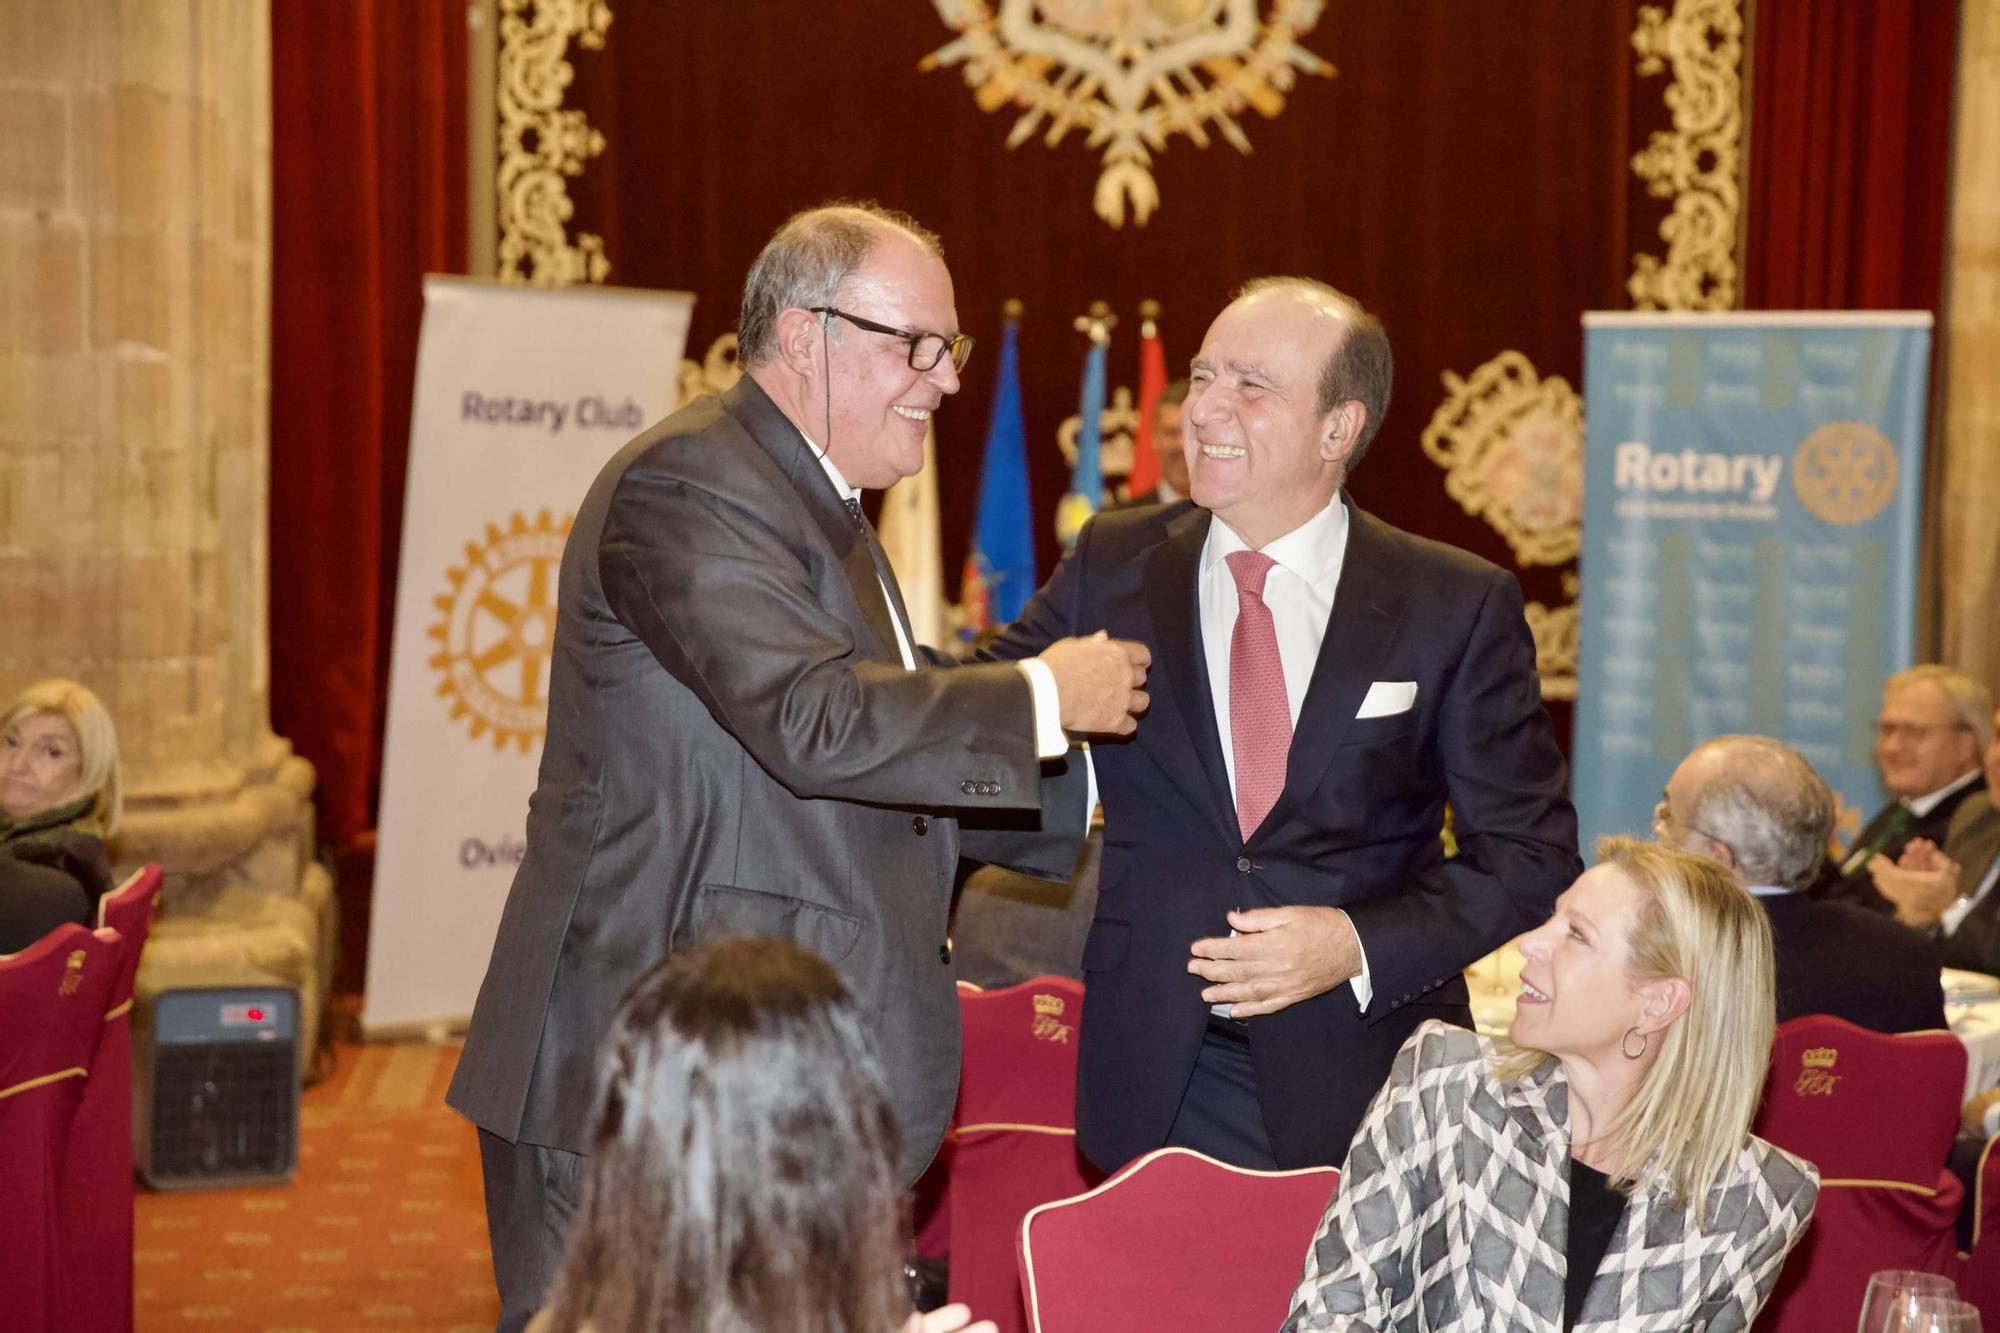 En imágenes: Entrega del premio "Paul Harris" del Rotary Club al empresario Álvaro Platero